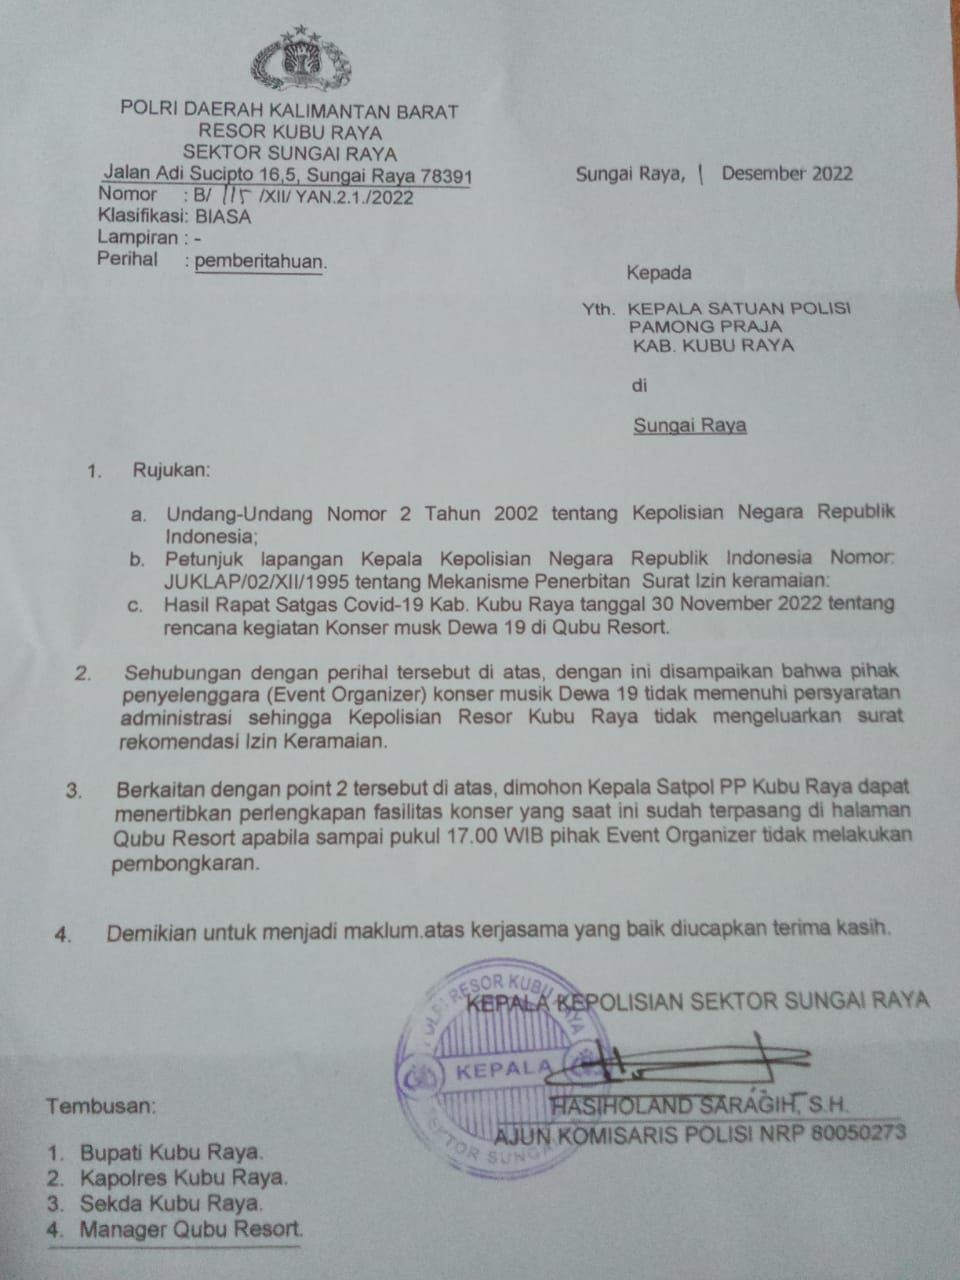 Surat pemberitahuan yang dikeluarkan dan ditandatangani oleh Kepala Kepolisian Sektor Sungai Raya, AKP Hasiholand Saragih kepada Kepala Satuan Polisi Pamong Praja Kabupaten Kubu Raya tertanggal 1 Desember 2022. (Foto: Istimewa)